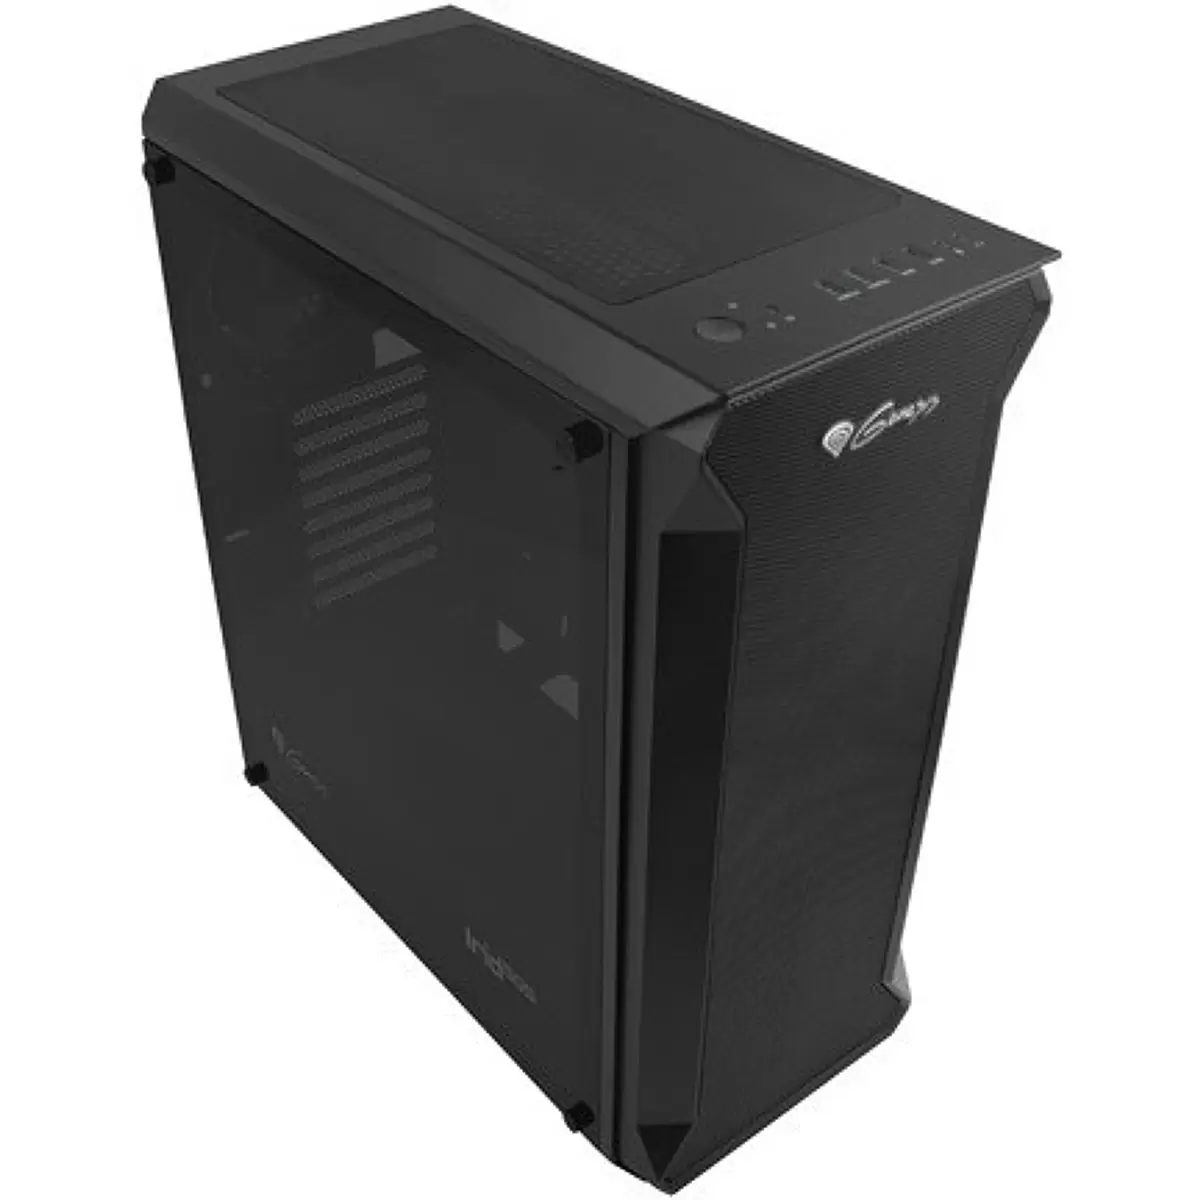 NATEC Genesis PC case Irid 505